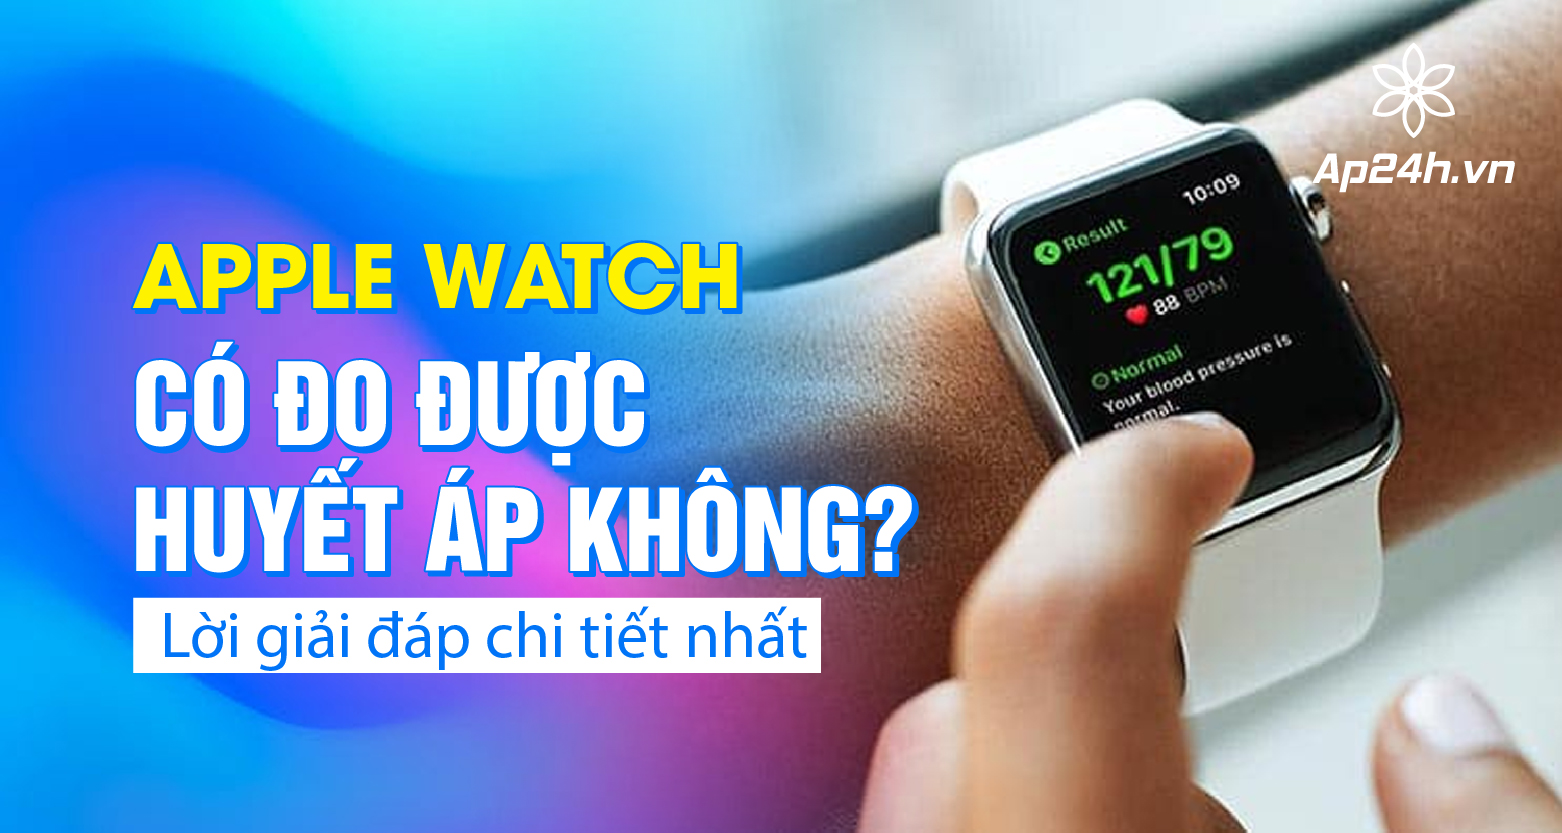 Apple Watch có đo được huyết áp không